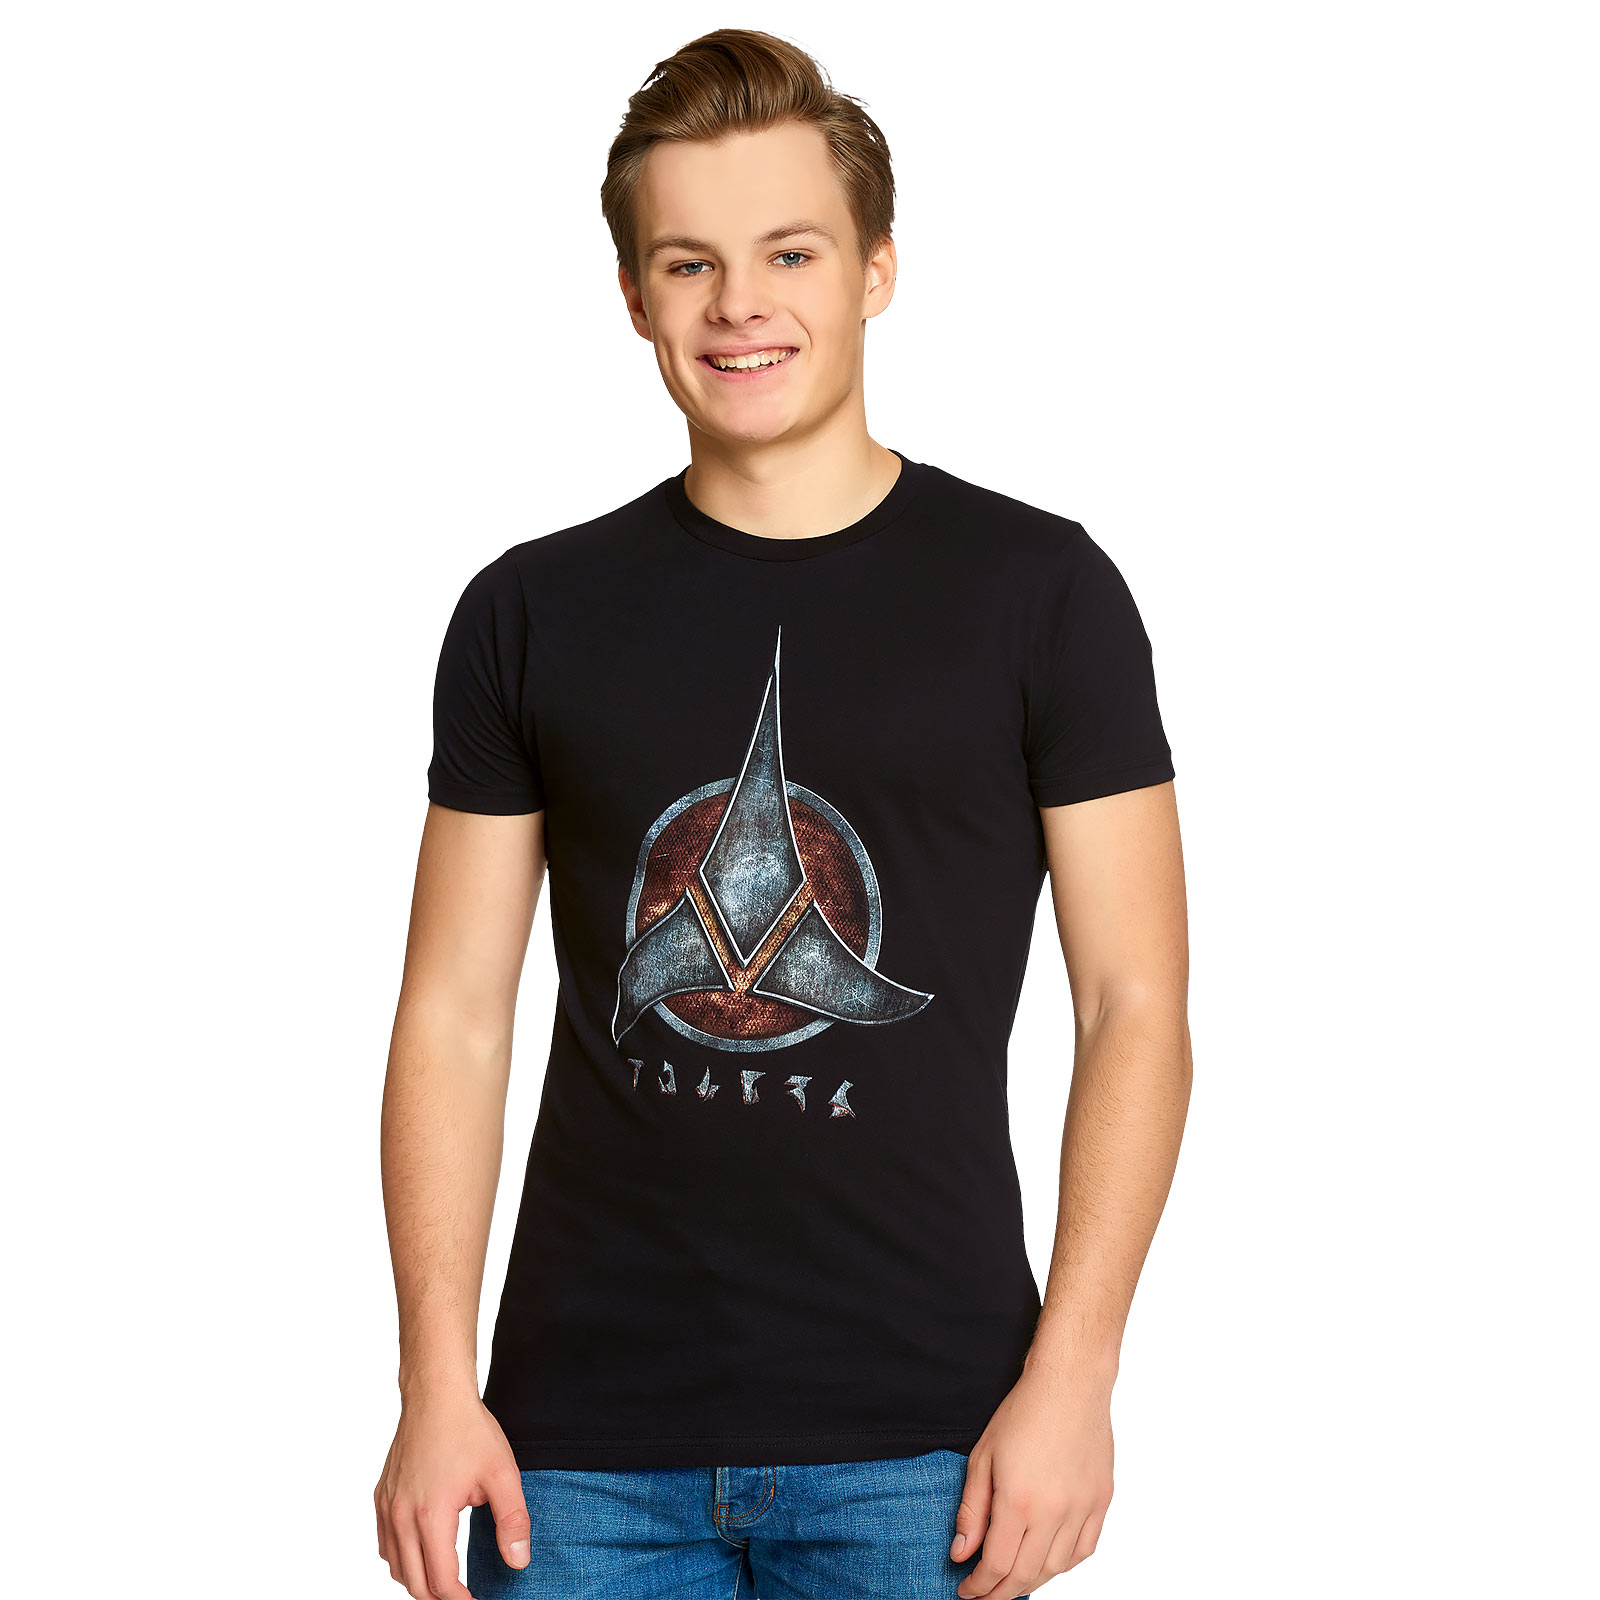 Star Trek - T-shirt noir avec emblème Klingon